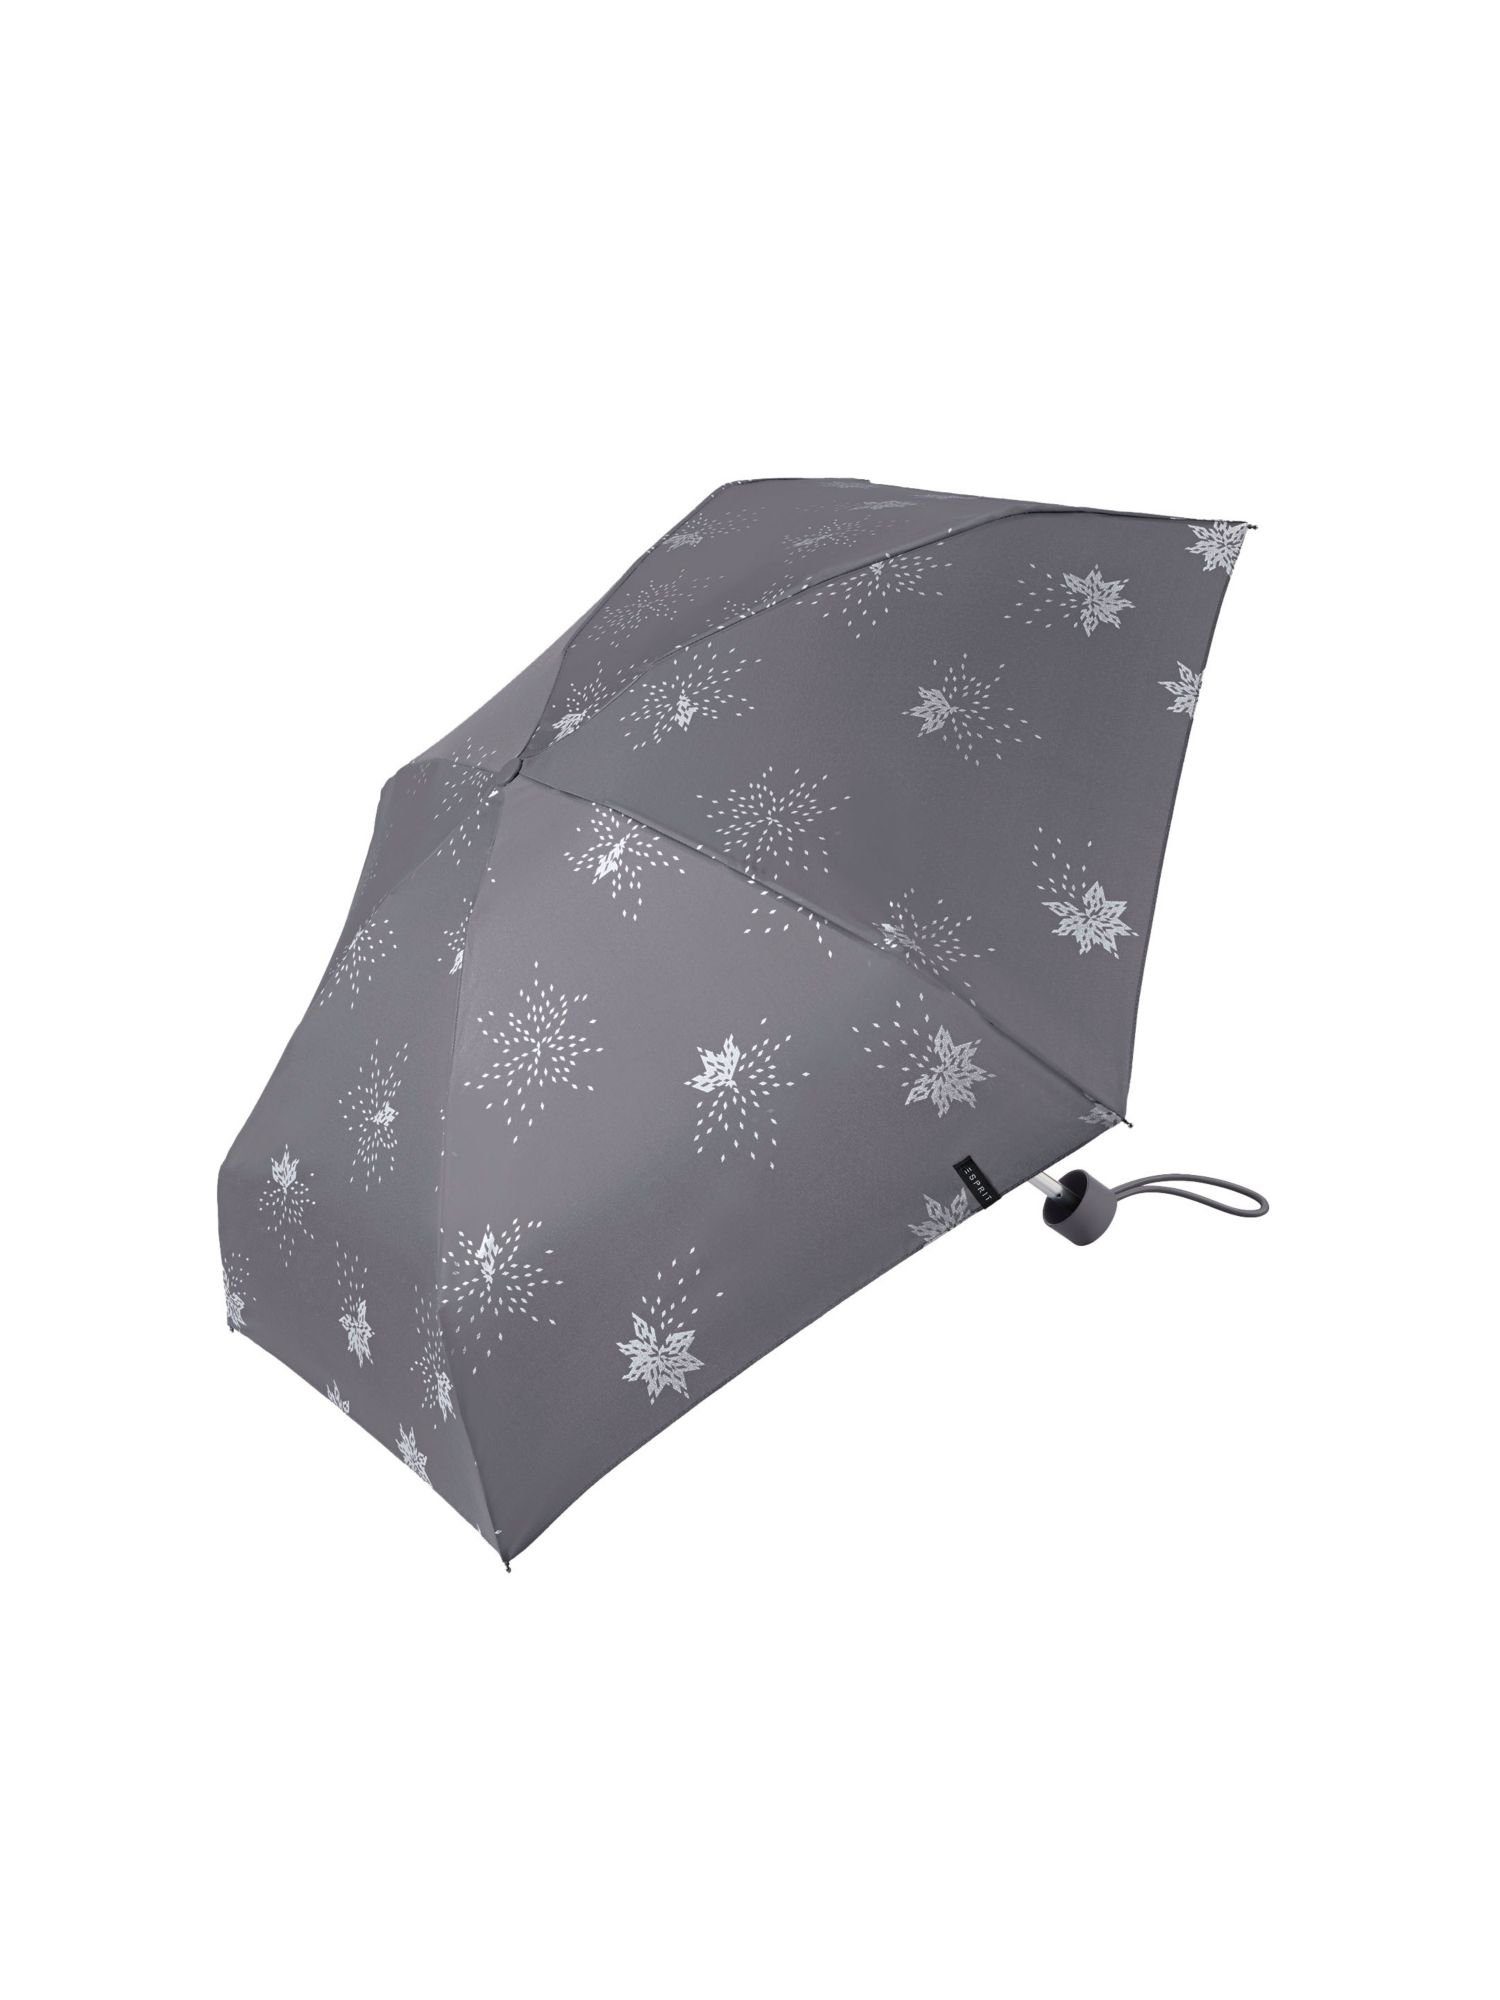 Esprit Taschenregenschirm Pocket umbrella